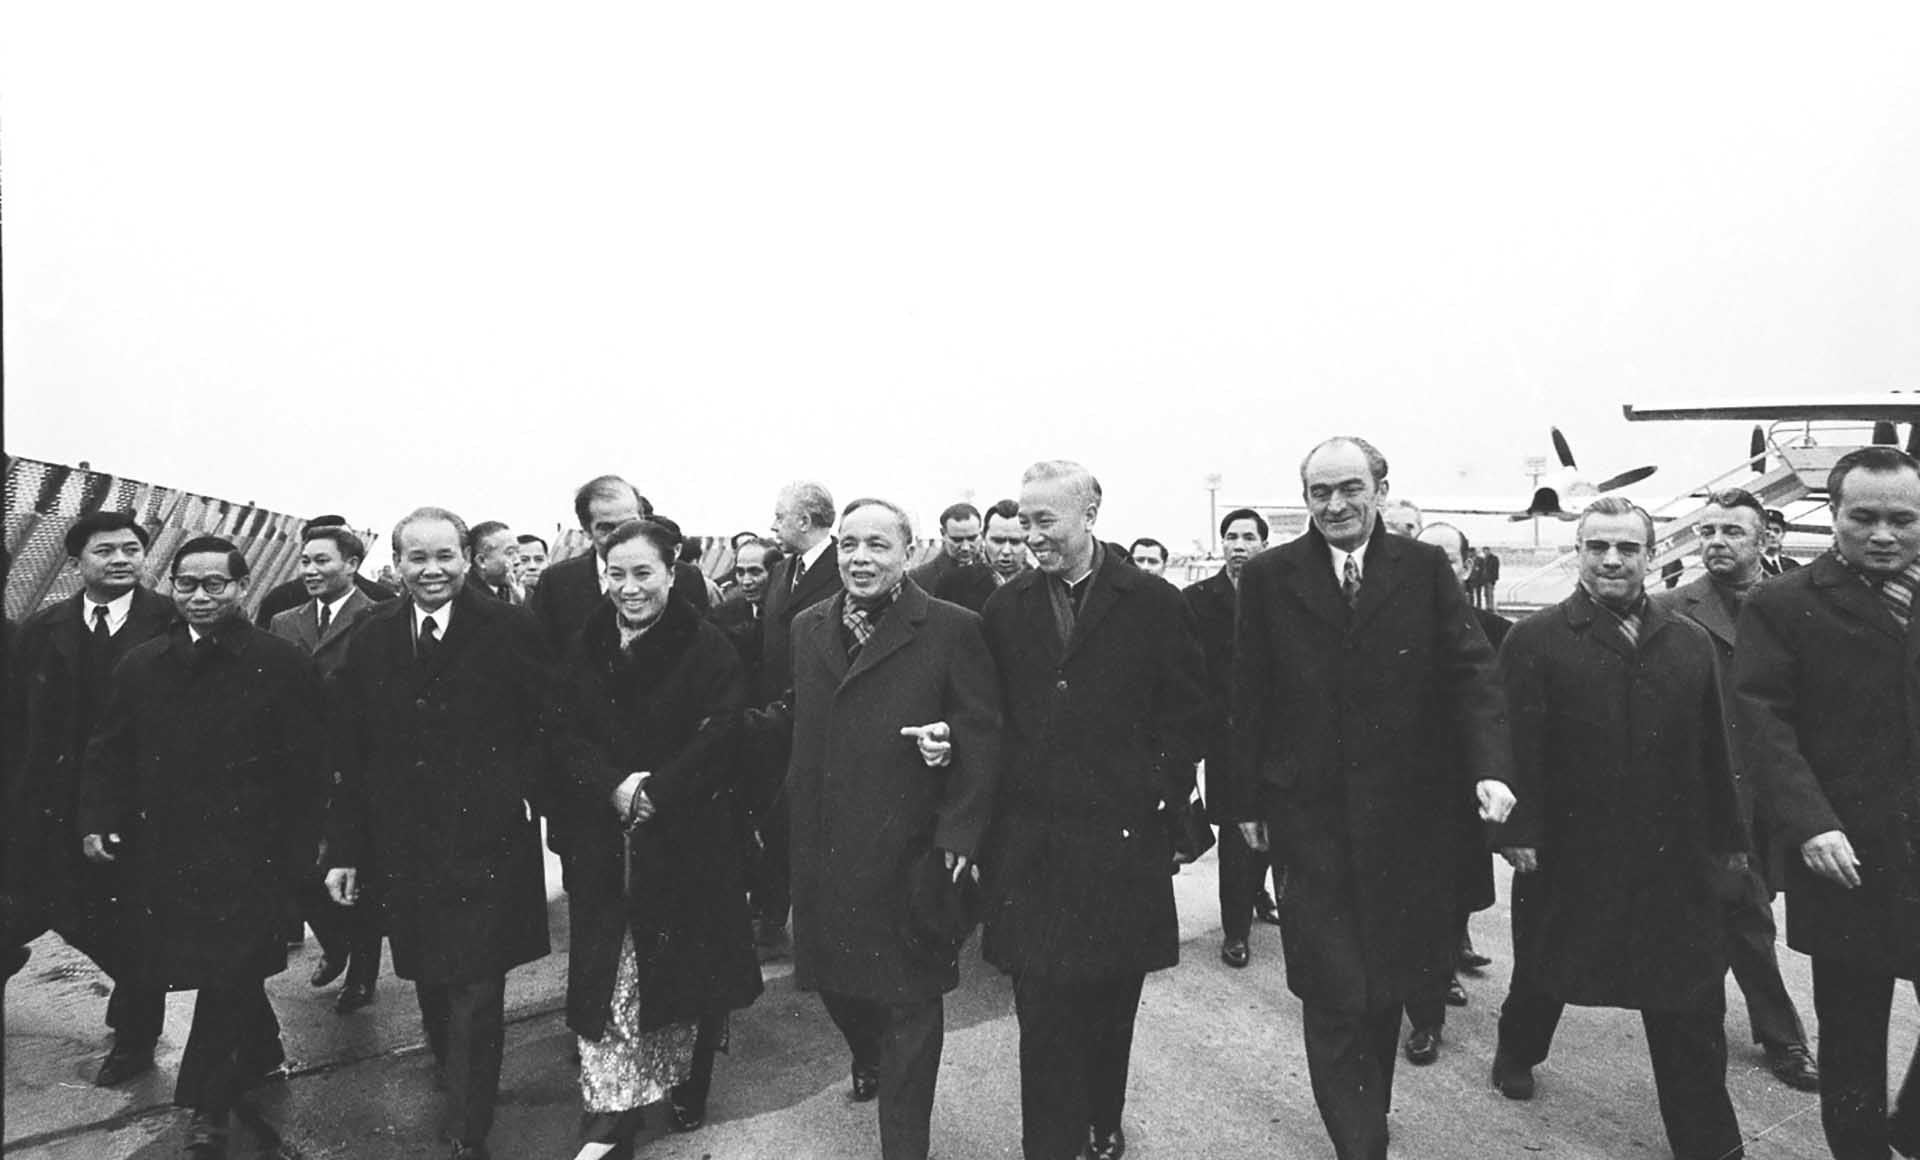 Cố vấn đặc biệt Lê Đức Thọ (hàng đầu, thứ tư, từ phải) đón Bộ trưởng Ngoại giao Việt Nam Dân chủ Cộng hòa Nguyễn Duy Trinh (giữa) đến Paris ngày 25/01/1973 để ký chính thức Hiệp định chấm dứt chiến tranh, lập lại hòa bình ở Việt Nam.